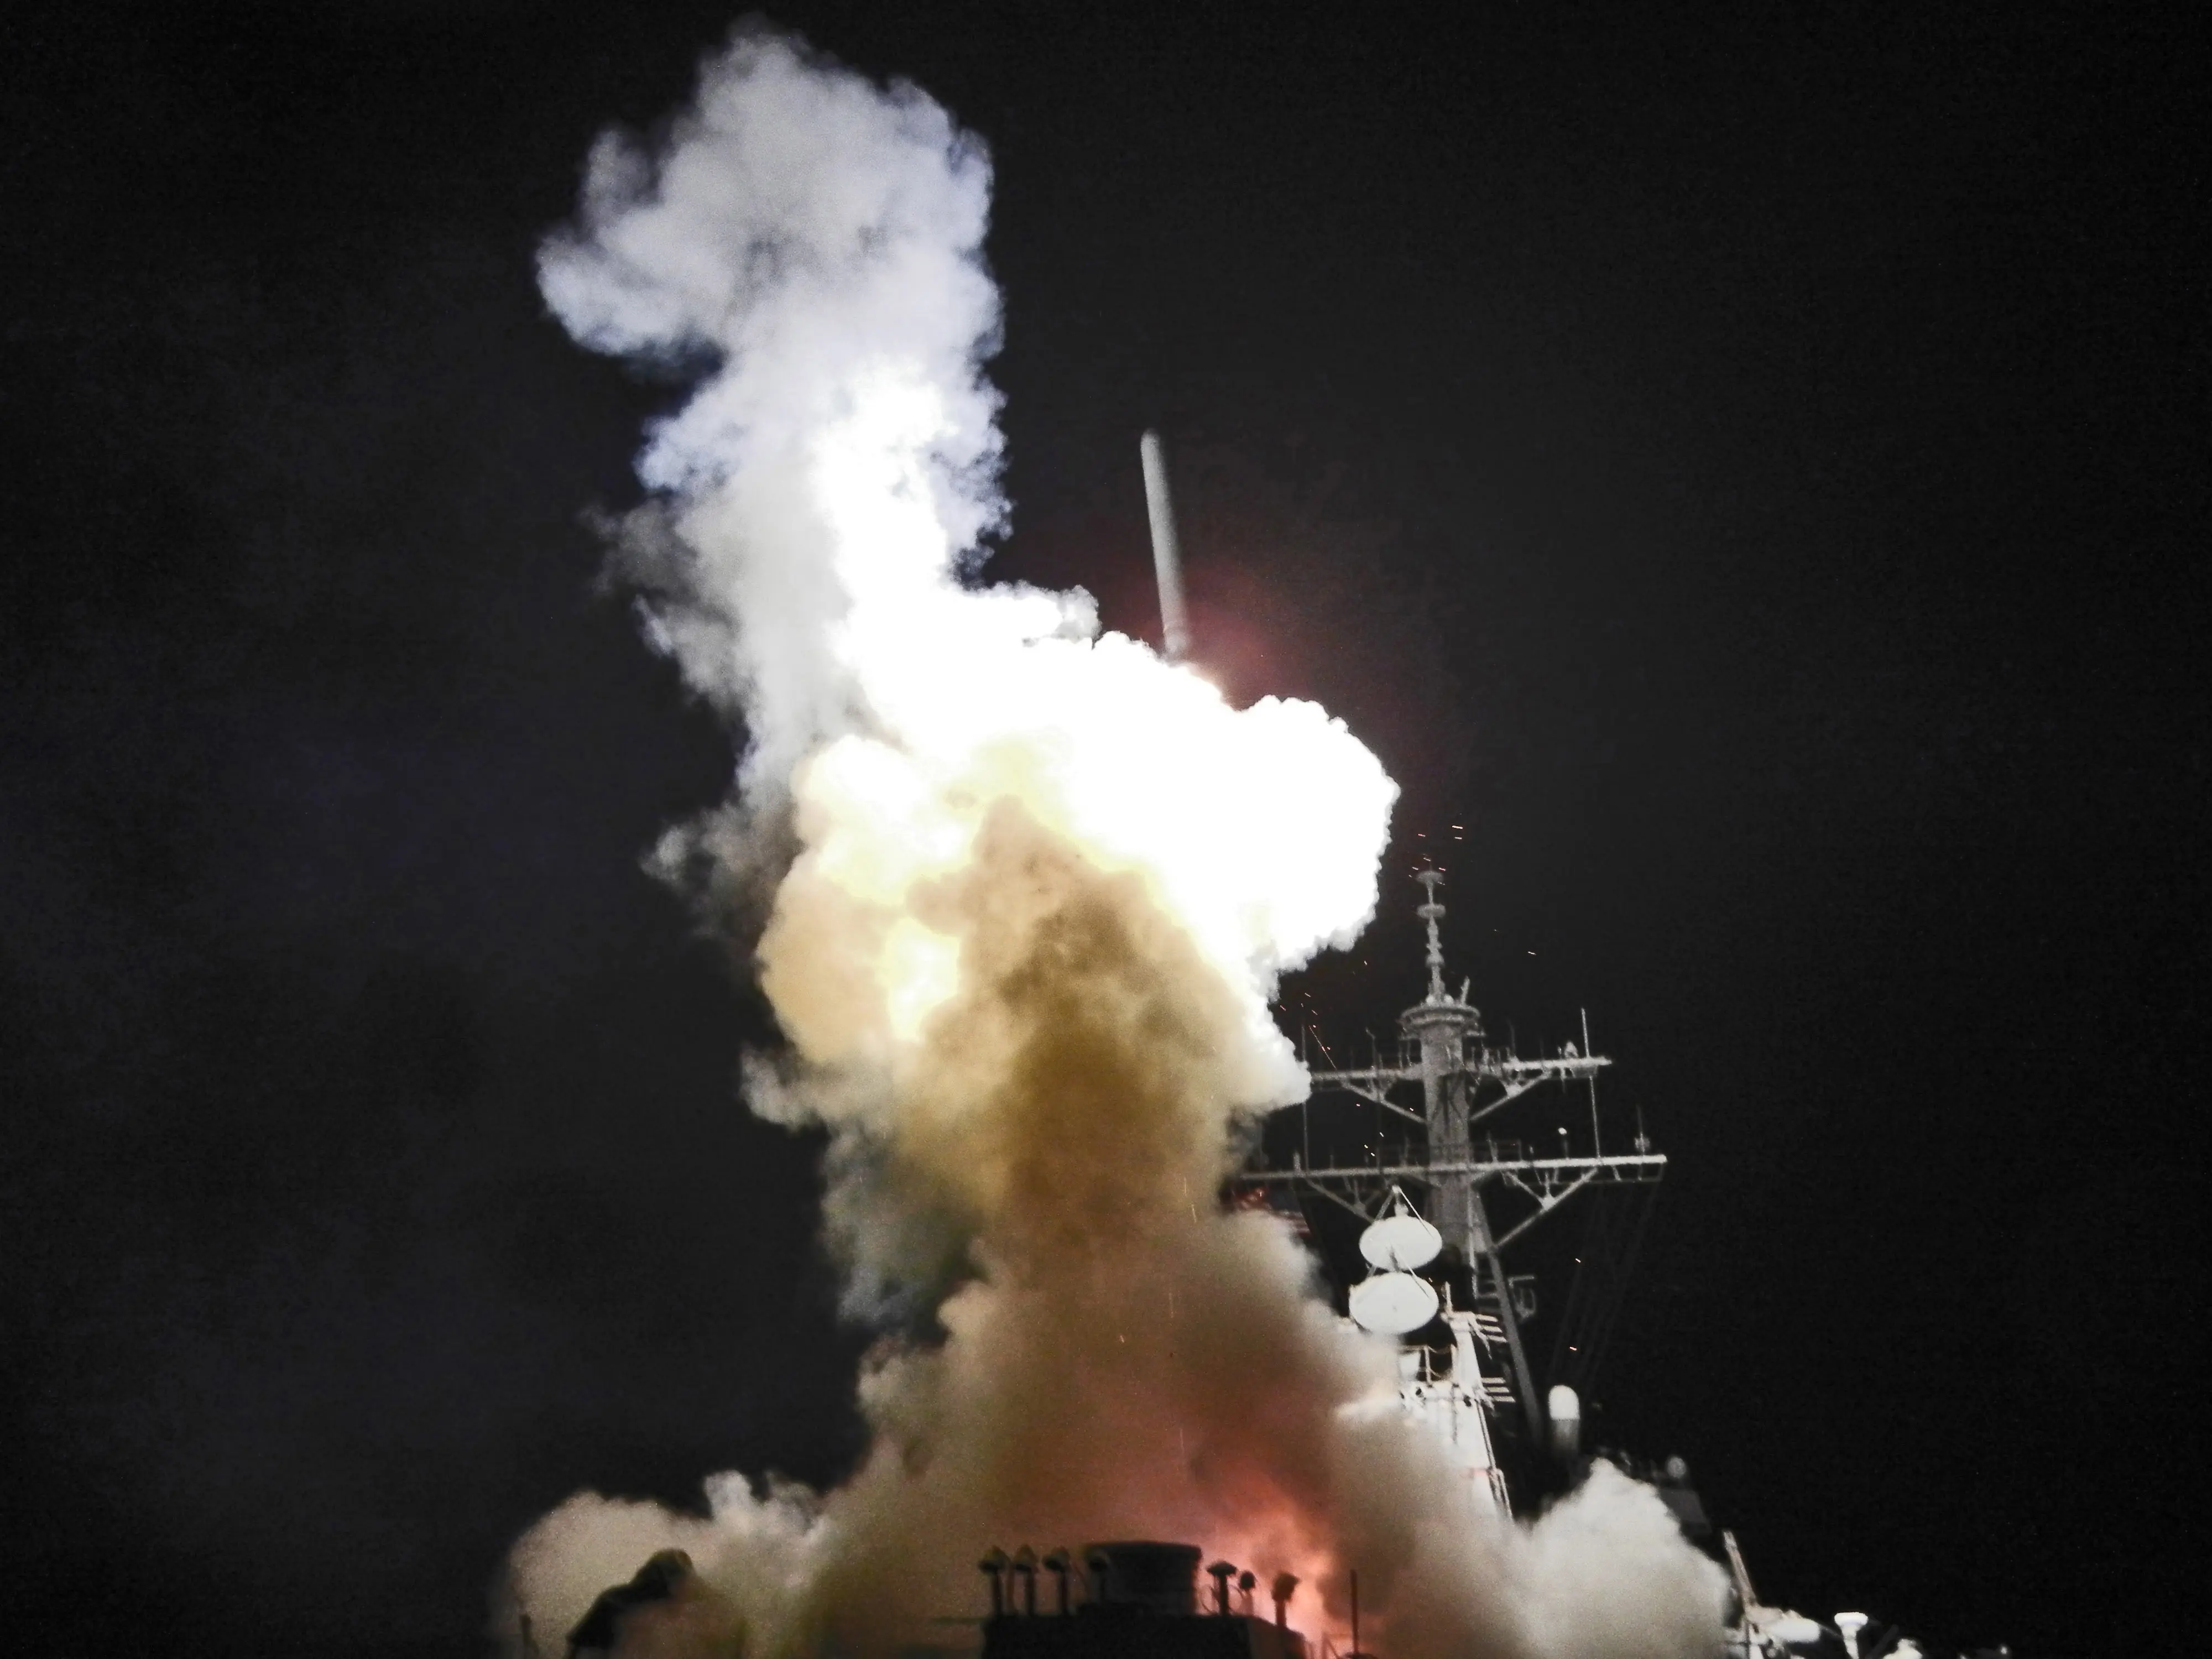 Peluncuran rudal Tomahawk dari USS Barry saat intervensi militer Amerika Serikat terhadap Libya, 2011 (Wikimedia Commons)